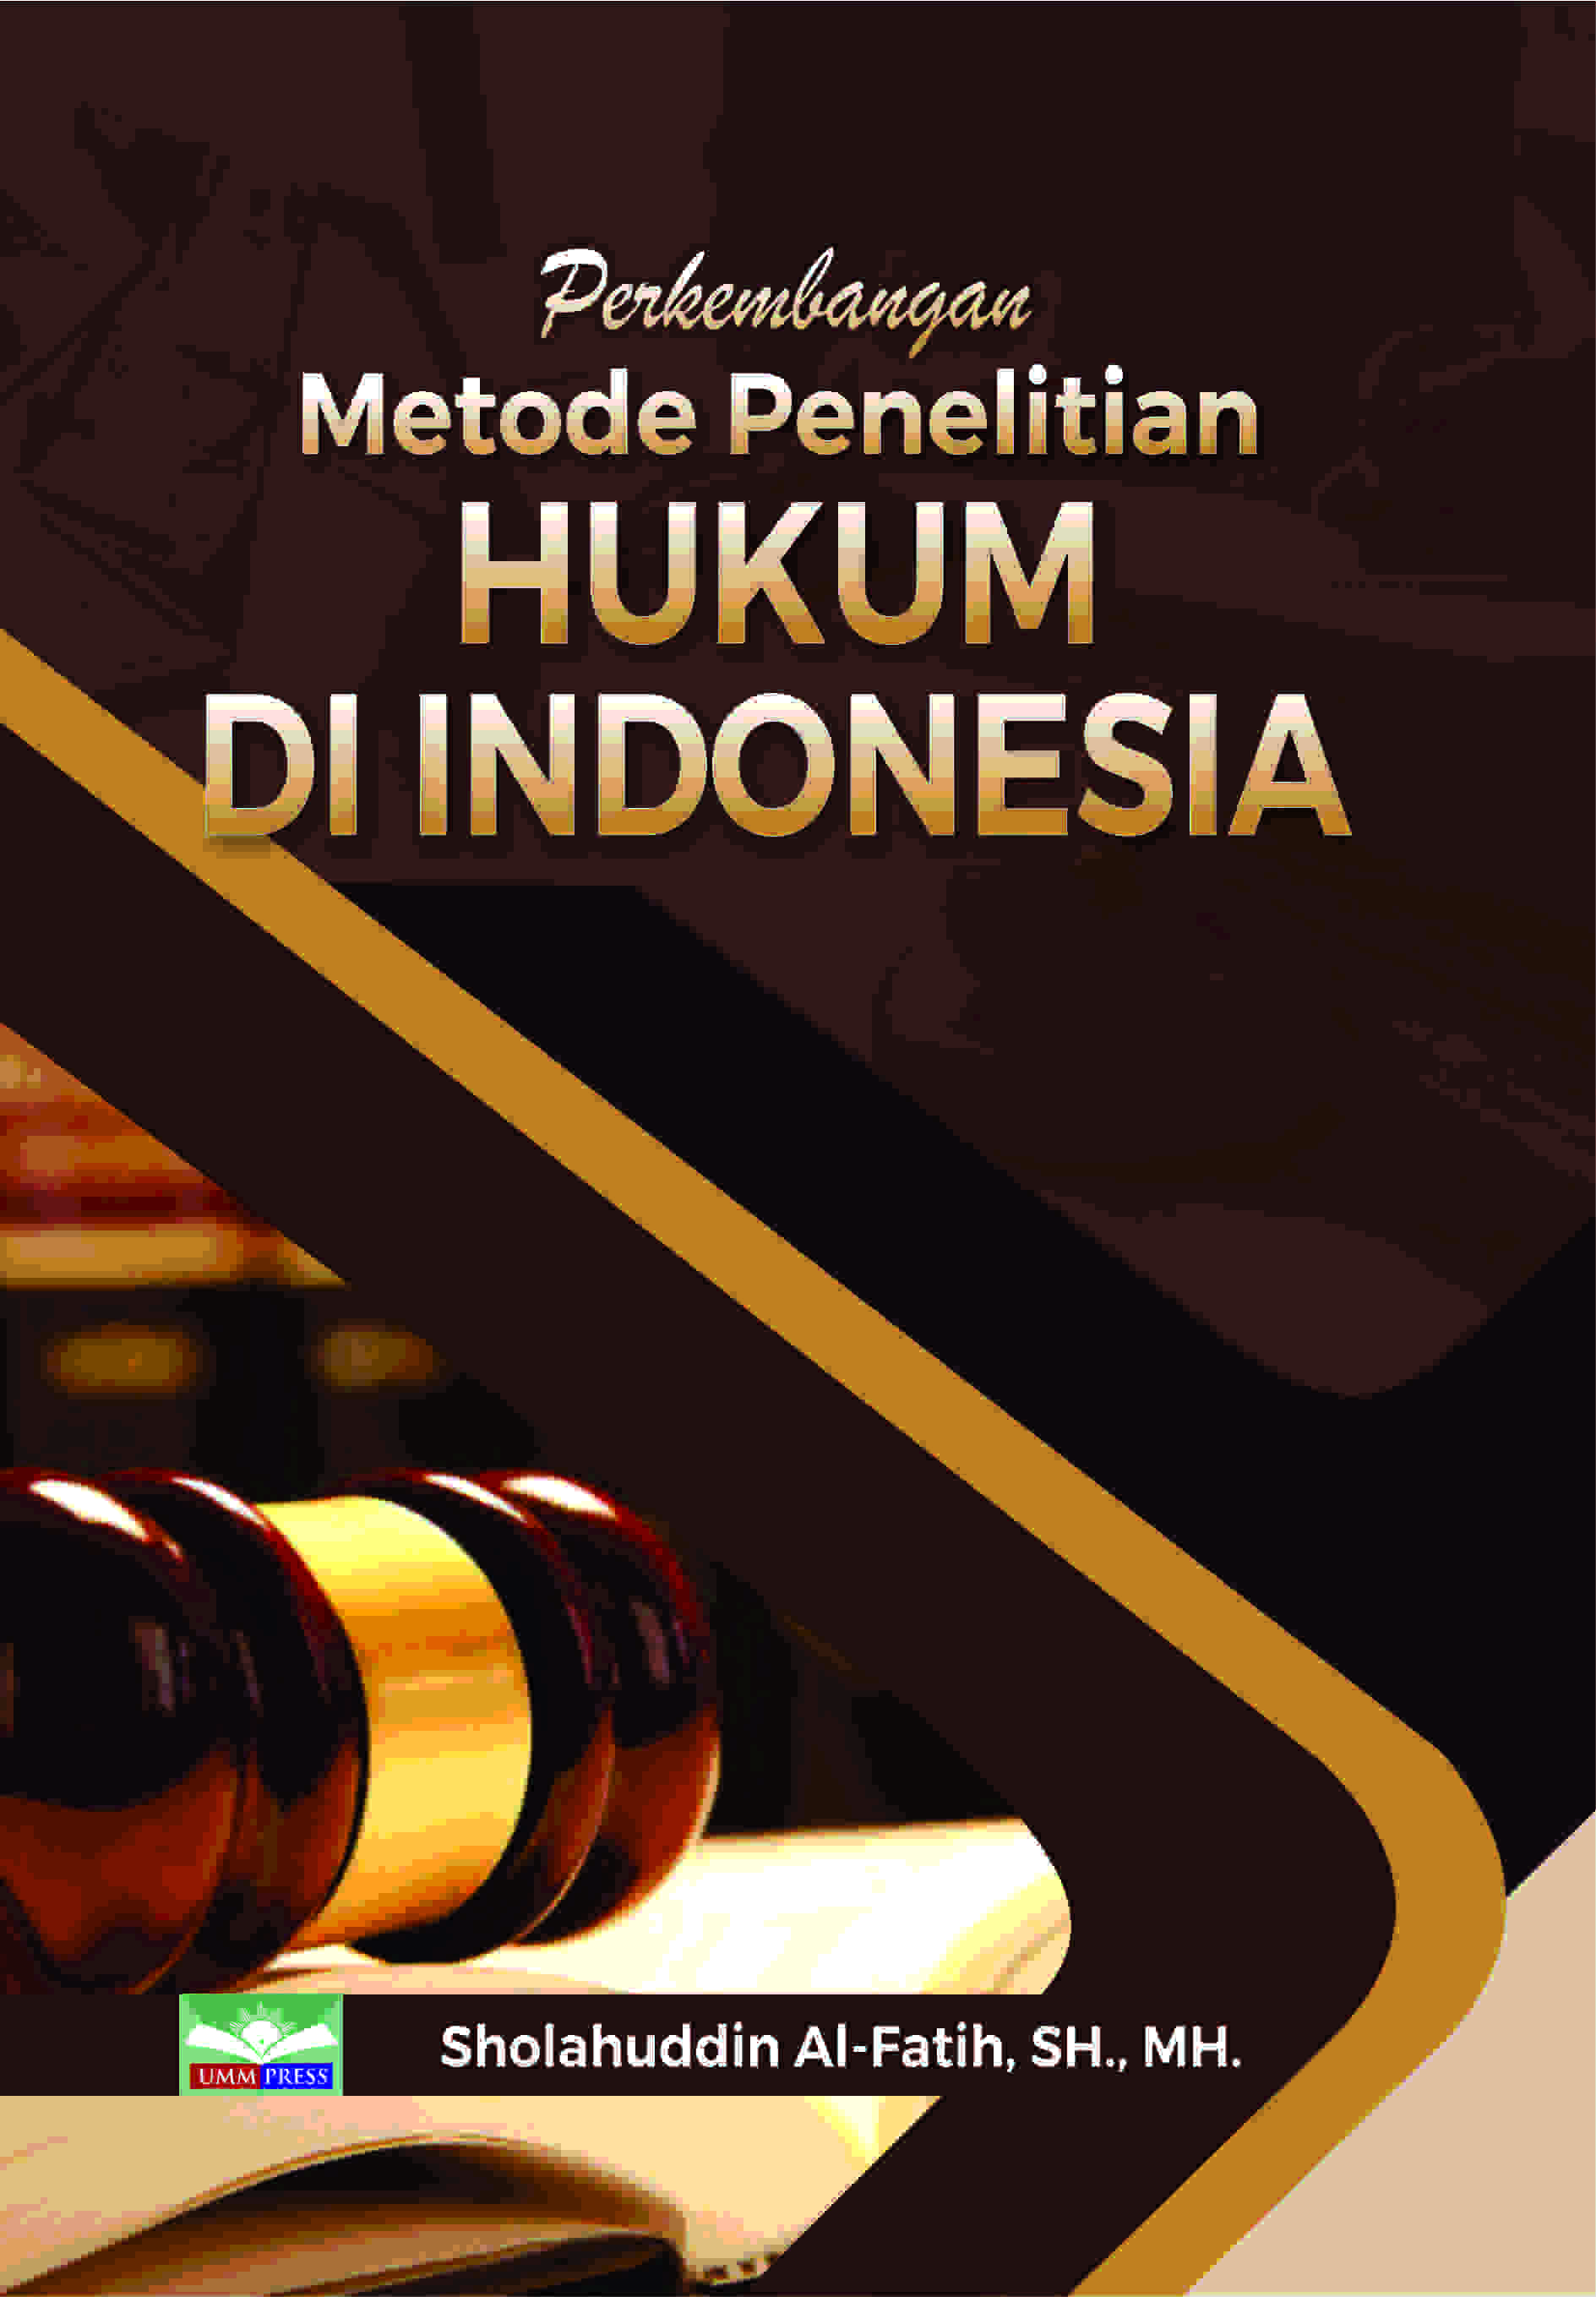 PERKEMBANGAN METODE PENELITIAN HUKUM DI INDONESIA